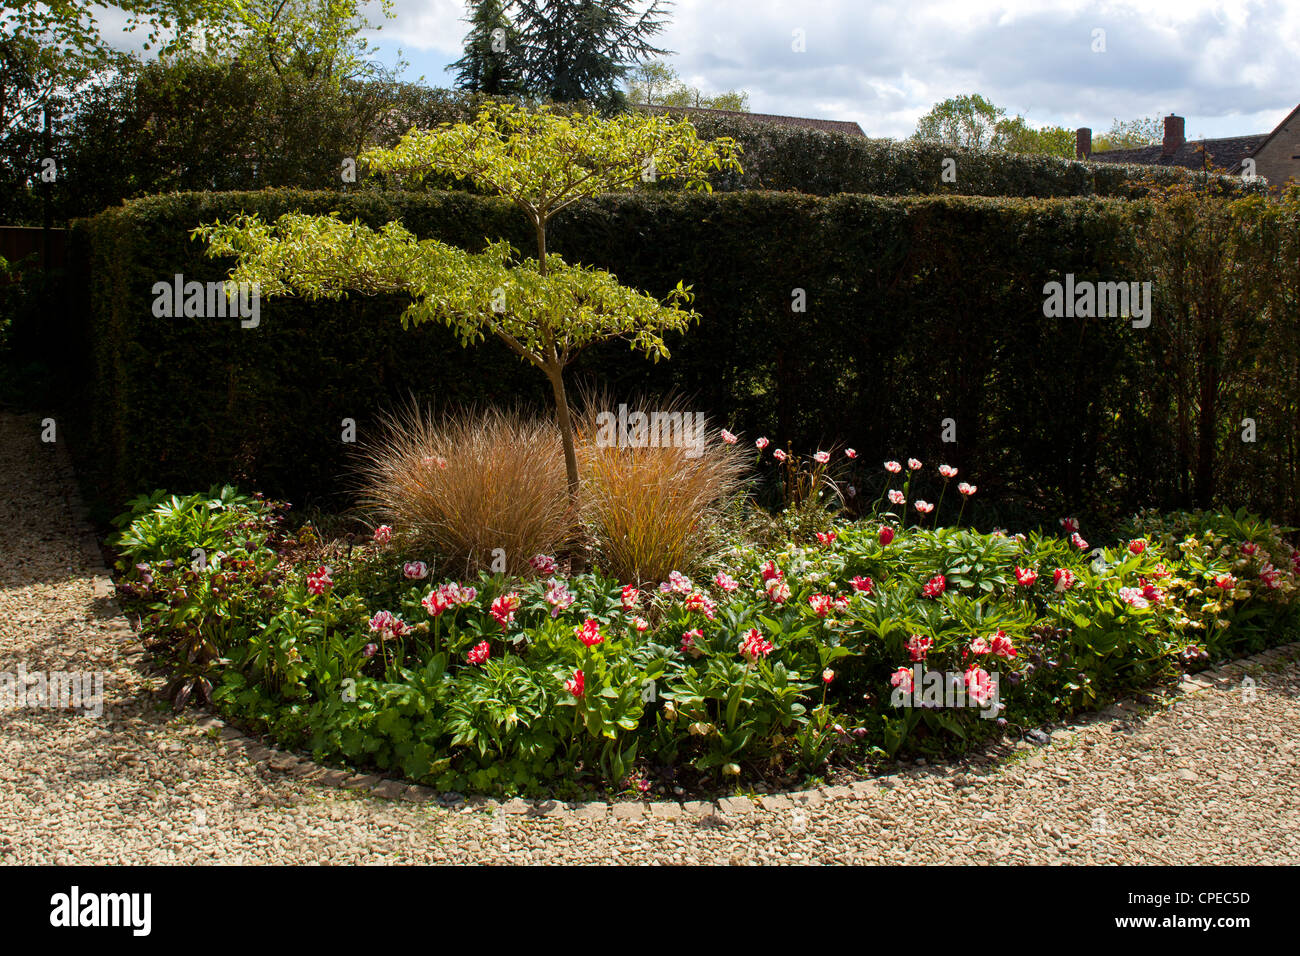 La plantation officielle régime en jardin anglais avec des tulipes, des herbes et disposent d'Acer tree Banque D'Images